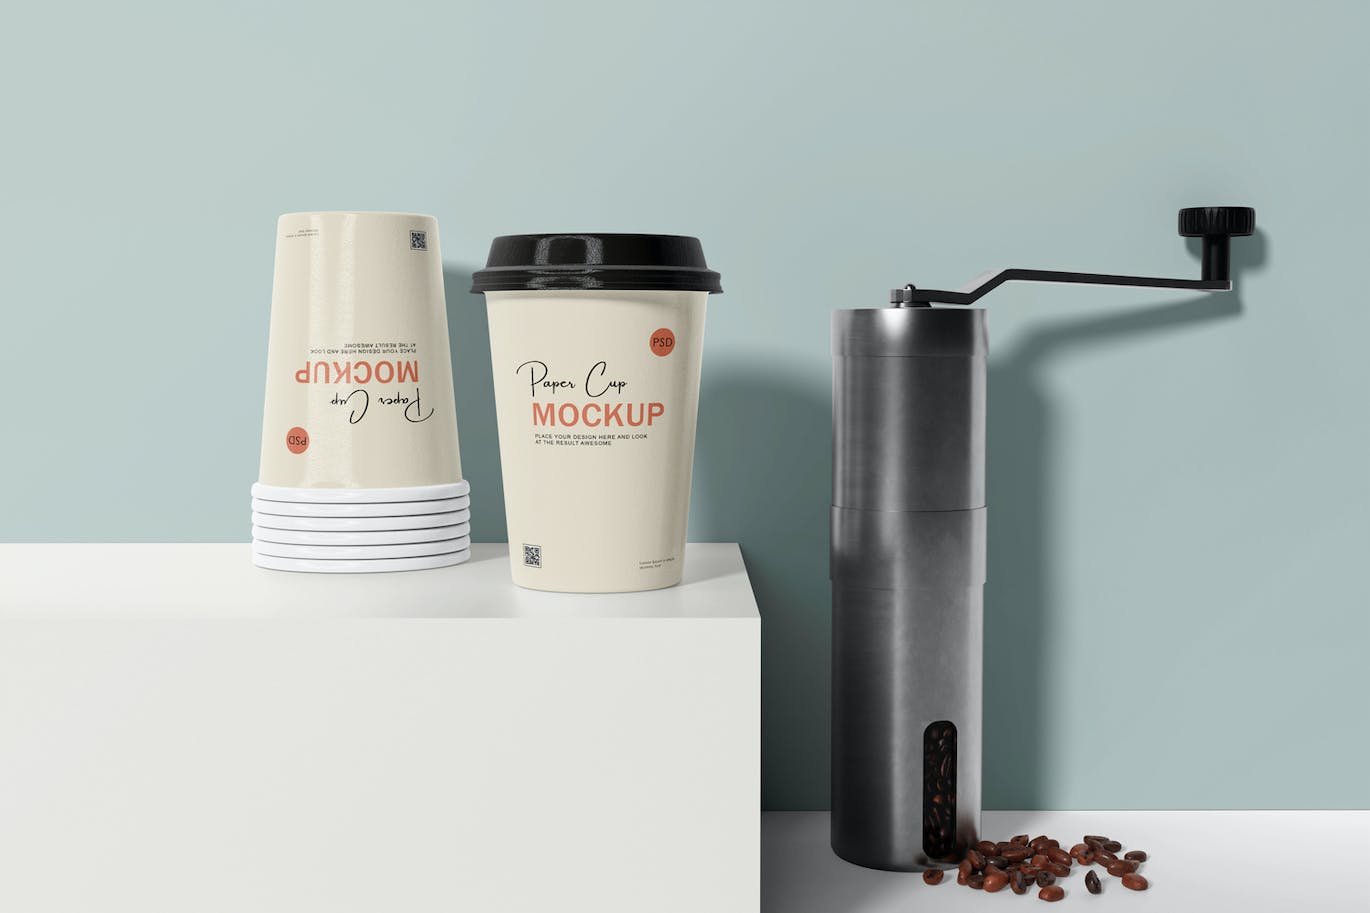 咖啡机咖啡杯包装设计样机 Coffee cup mockup with coffee machine 样机素材 第8张